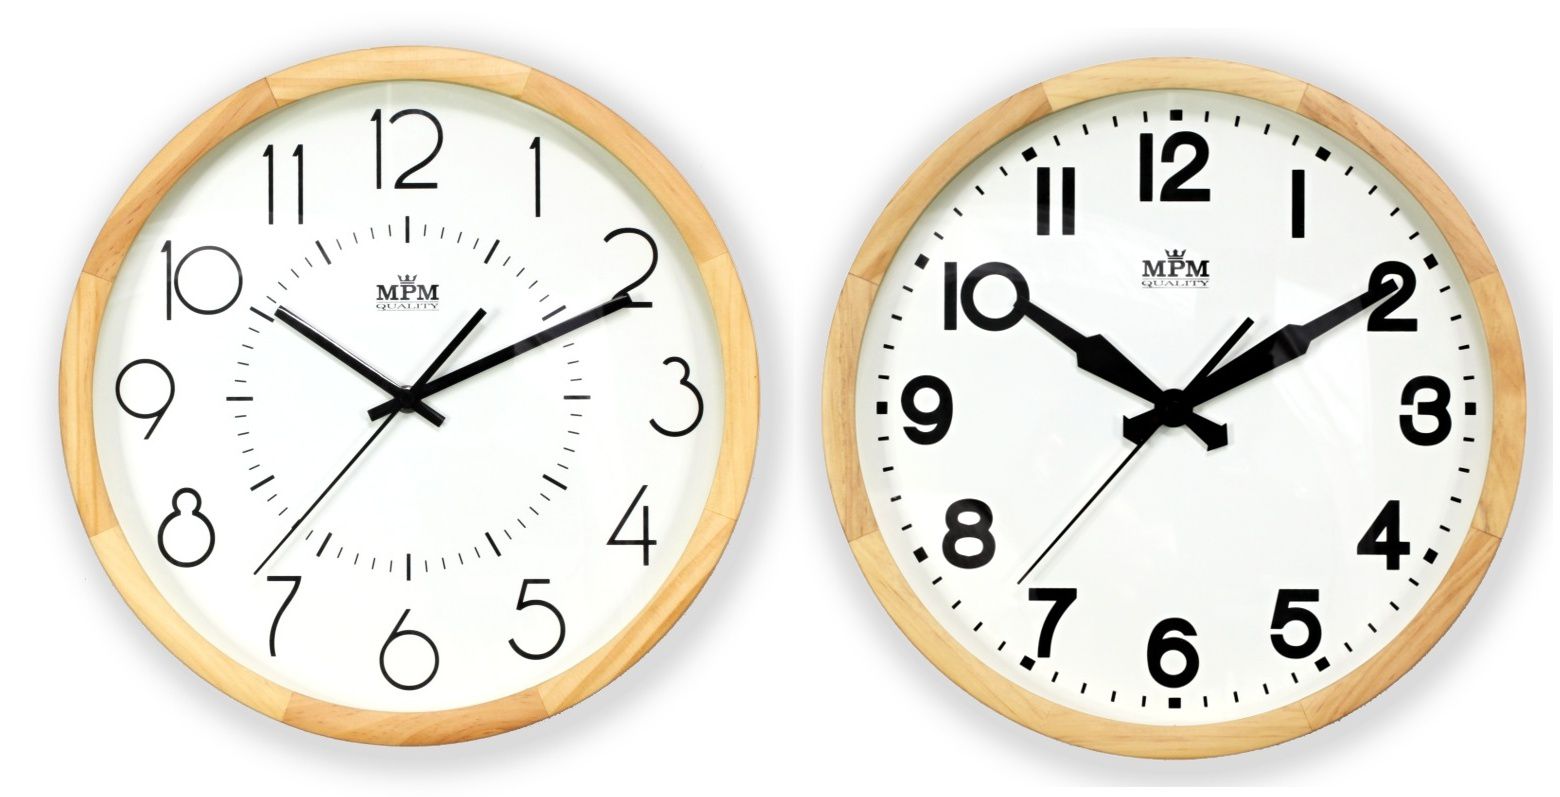 Dřevěné nástěnné hodiny s jednoduchým ciferníkem E07.3662